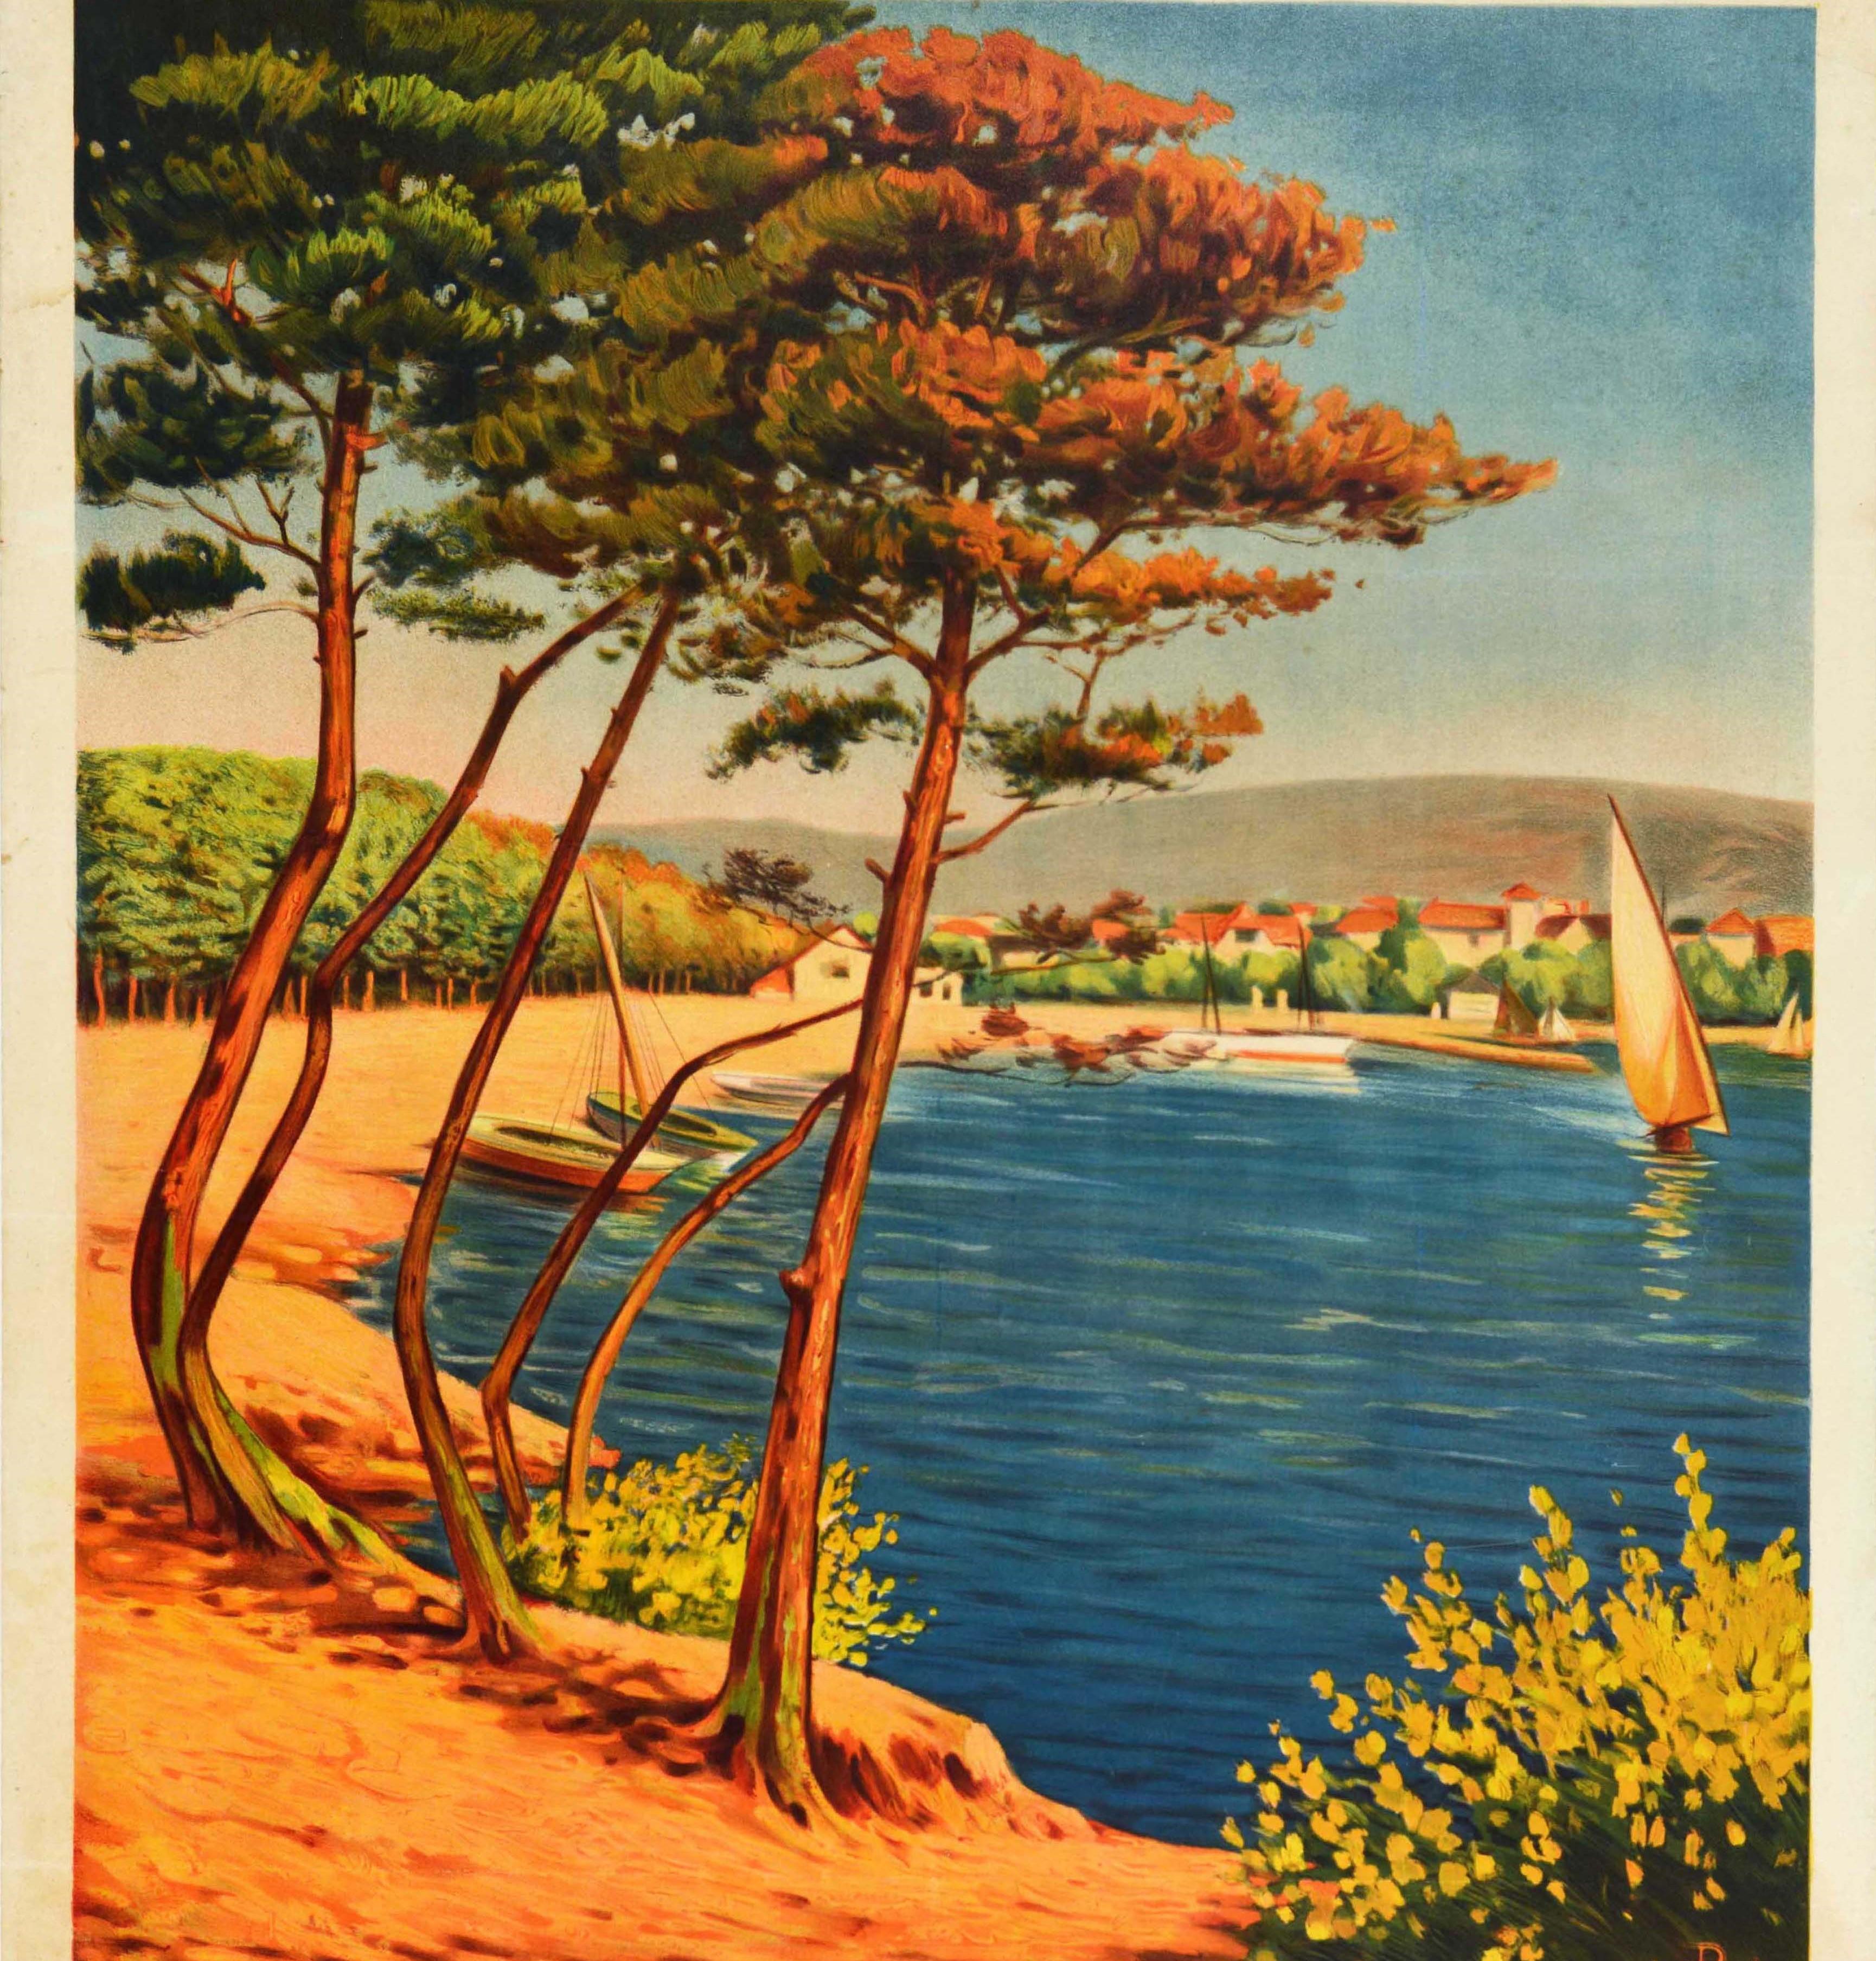 Originales antikes Reiseplakat für den 25 km von Marseille entfernten Badeort Carry Le Rouet mit einer malerischen Ansicht von Segelbooten auf dem Meer mit Bäumen im Vordergrund und Hügeln in der Ferne hinter den Häusern auf der anderen Seite des